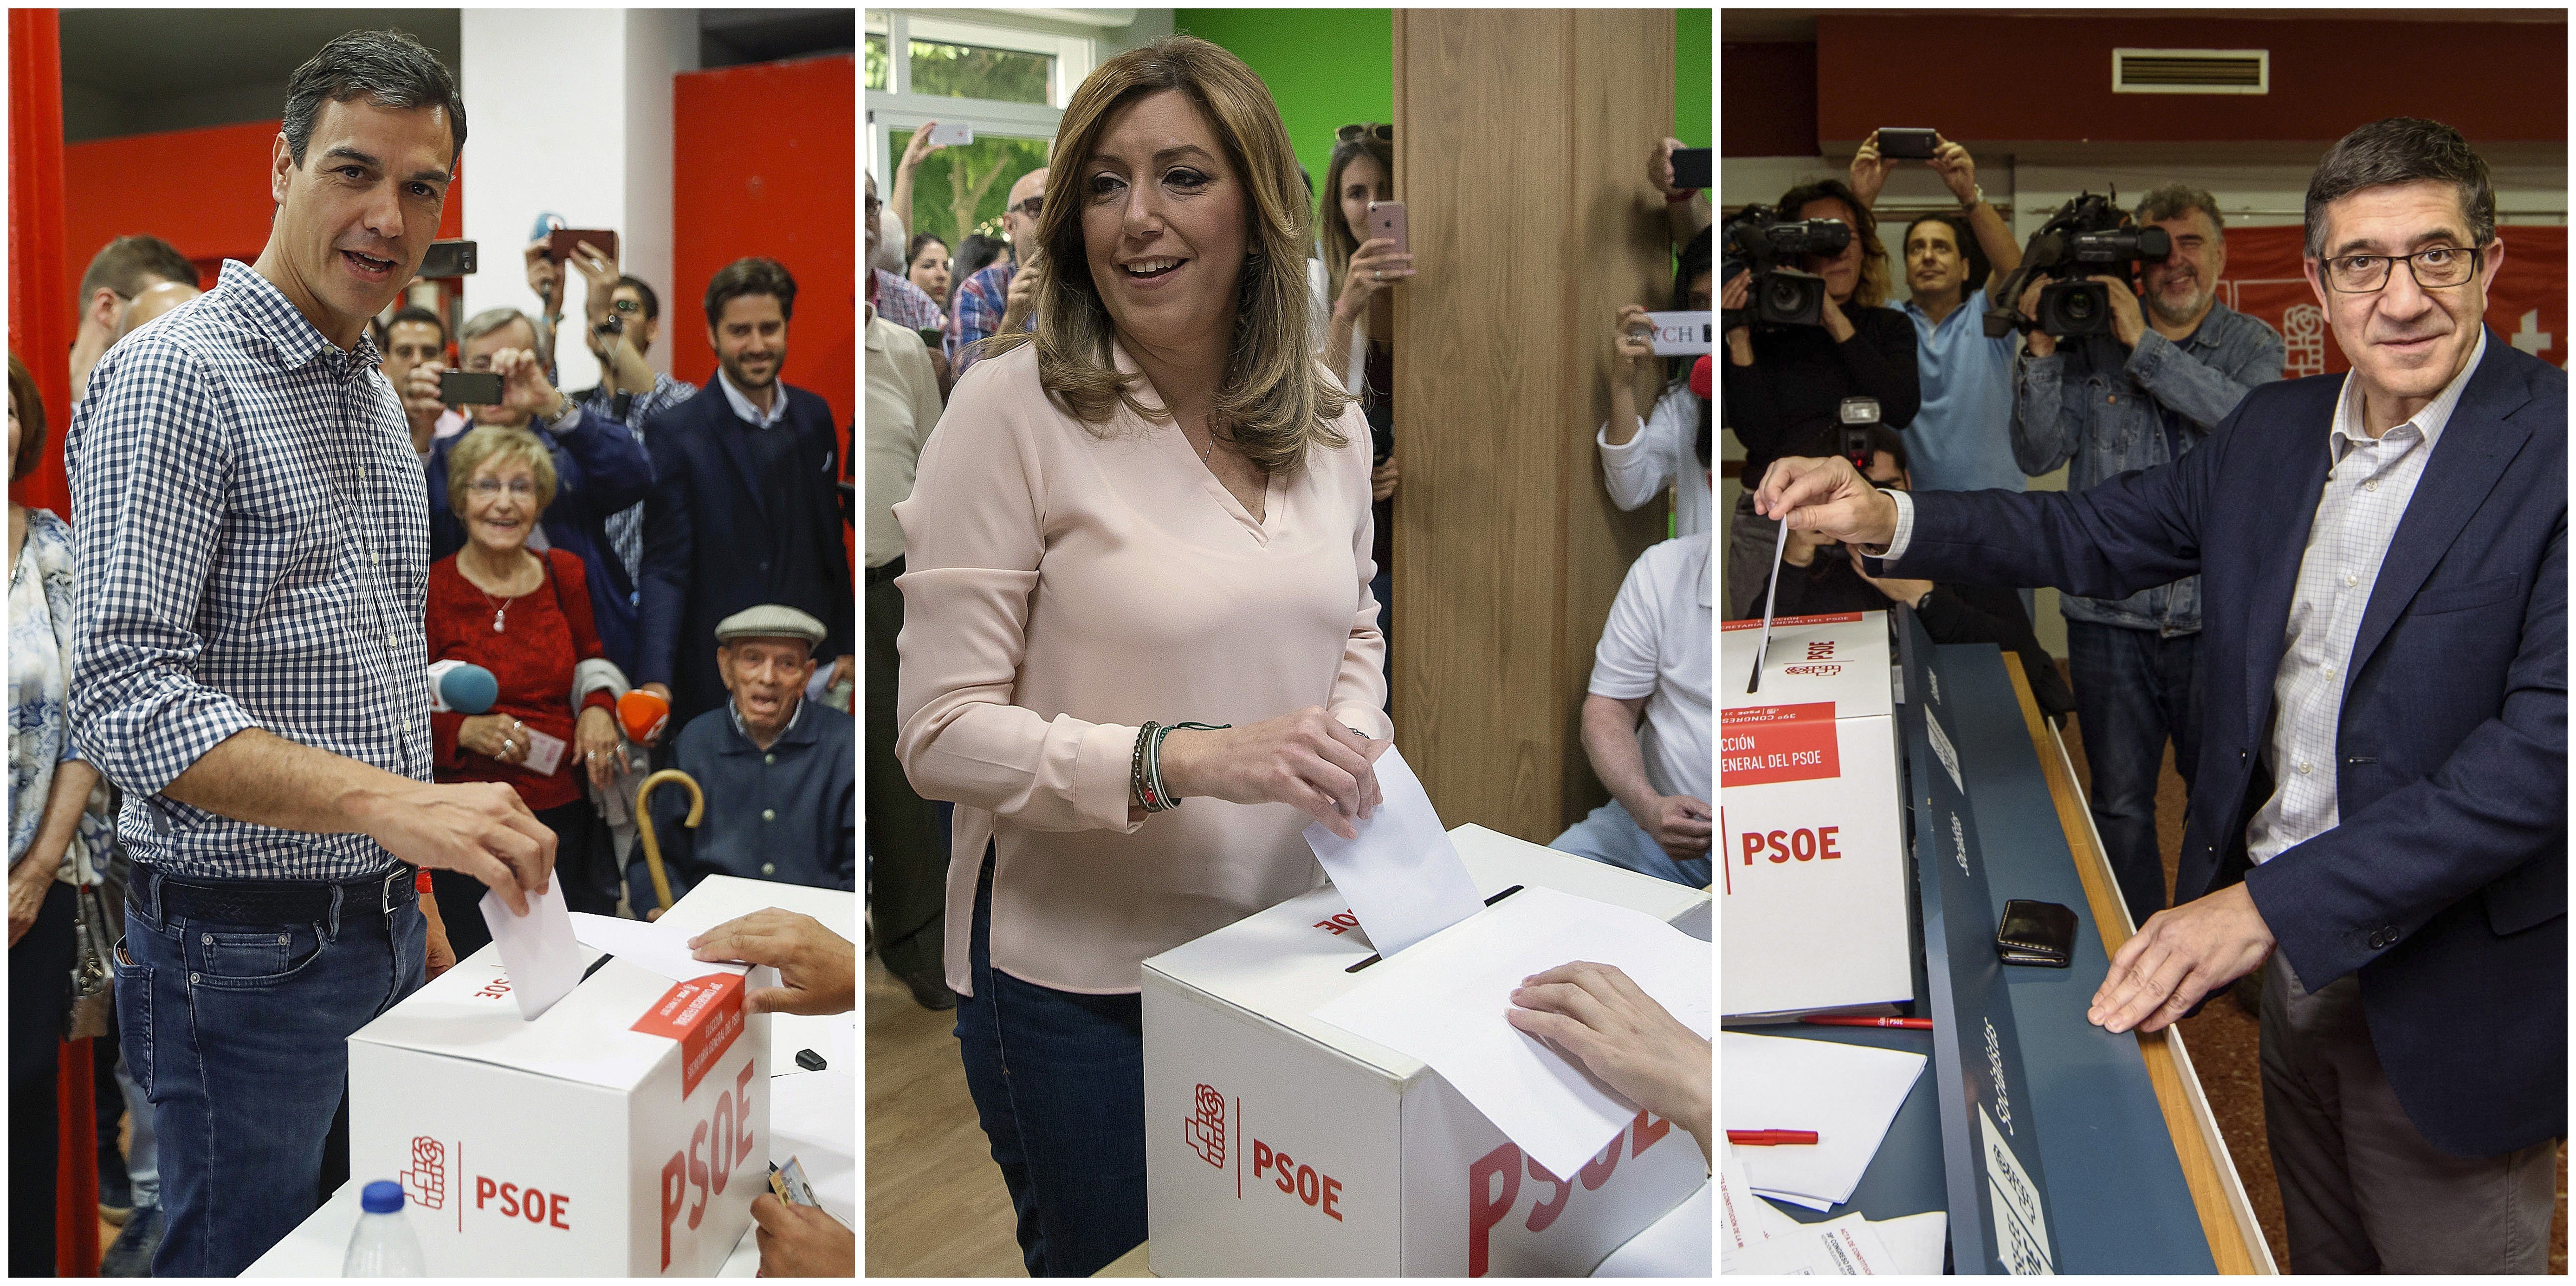 Rècord de participació a les primàries del PSOE: 51% a les 14 hores